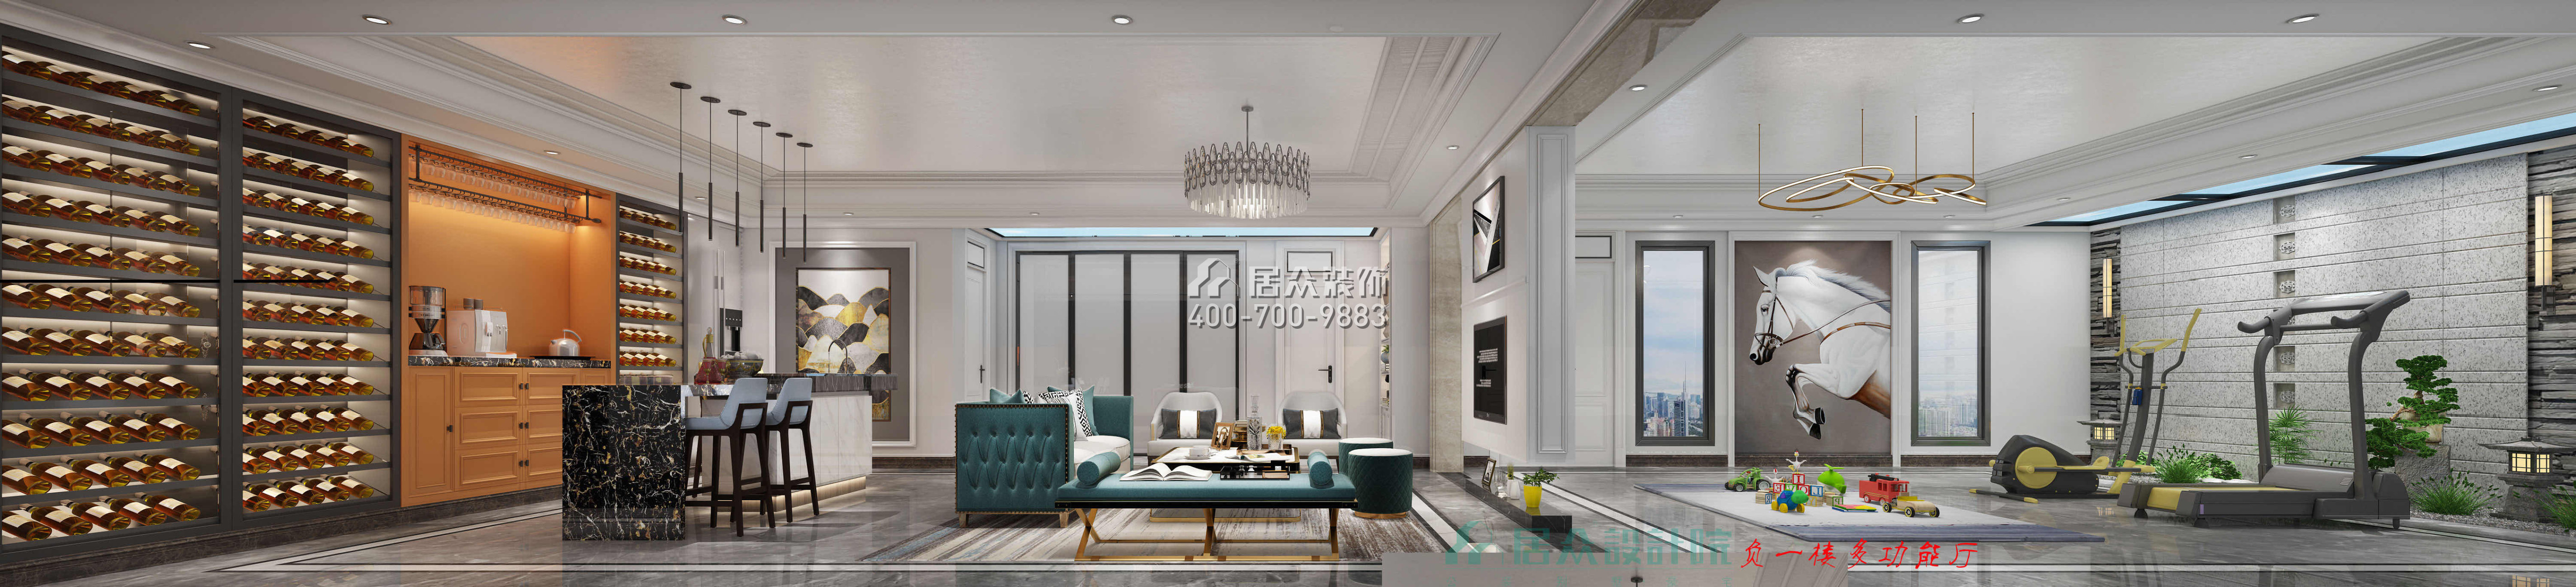 紫檀山700平方米現代簡約風格別墅戶型客廳裝修效果圖